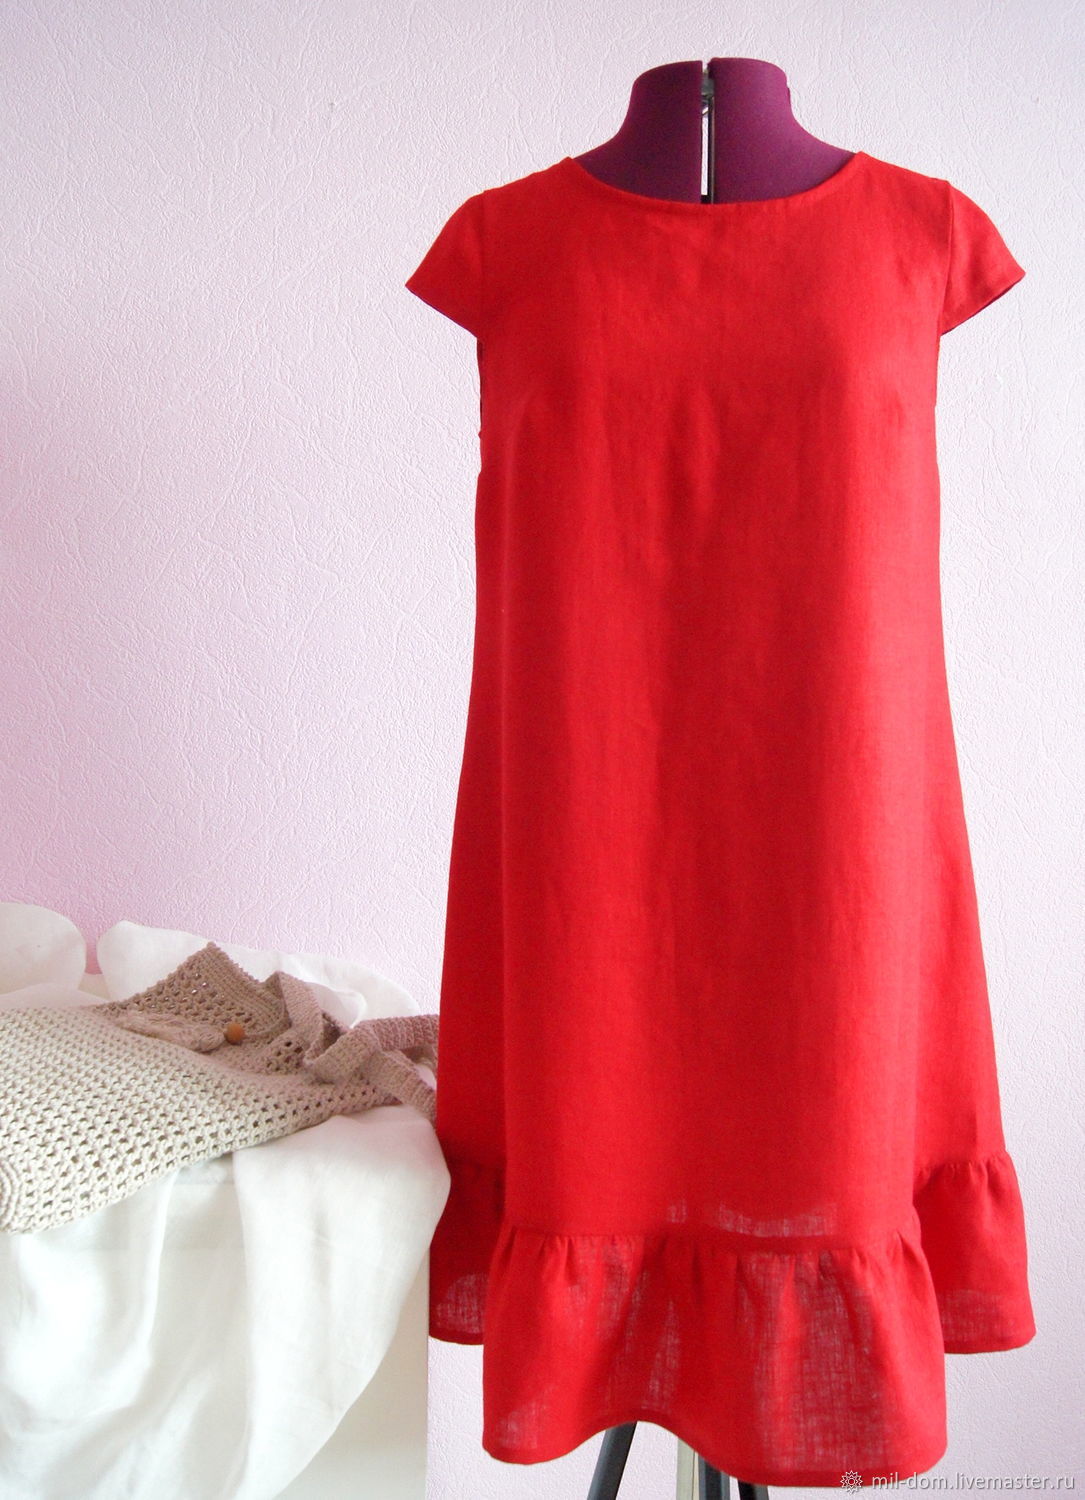 Красное платье лен. Красное платье из льна. Платье лен красный цвет. Льняное платье красного цвета.